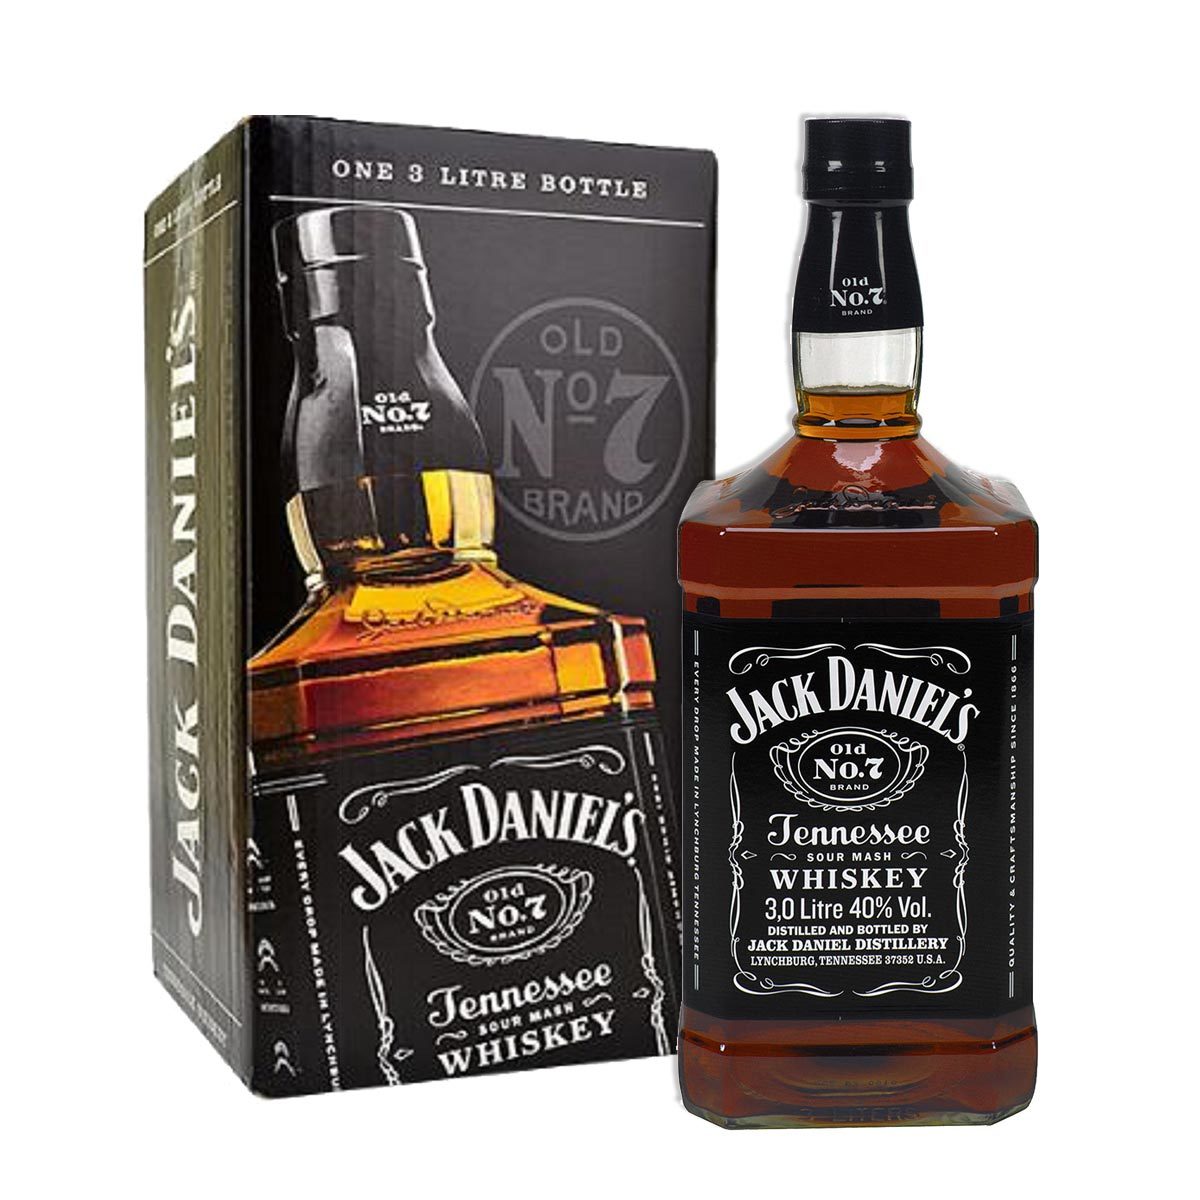 Джек даниэль. Джек Дэниэлс Блэк. Виски Джек джемисон. Виски Джек Дэниэлс Теннесси. Jack Daniels Tennessee Whiskey Джек Дэниэл'с Теннесси виски.